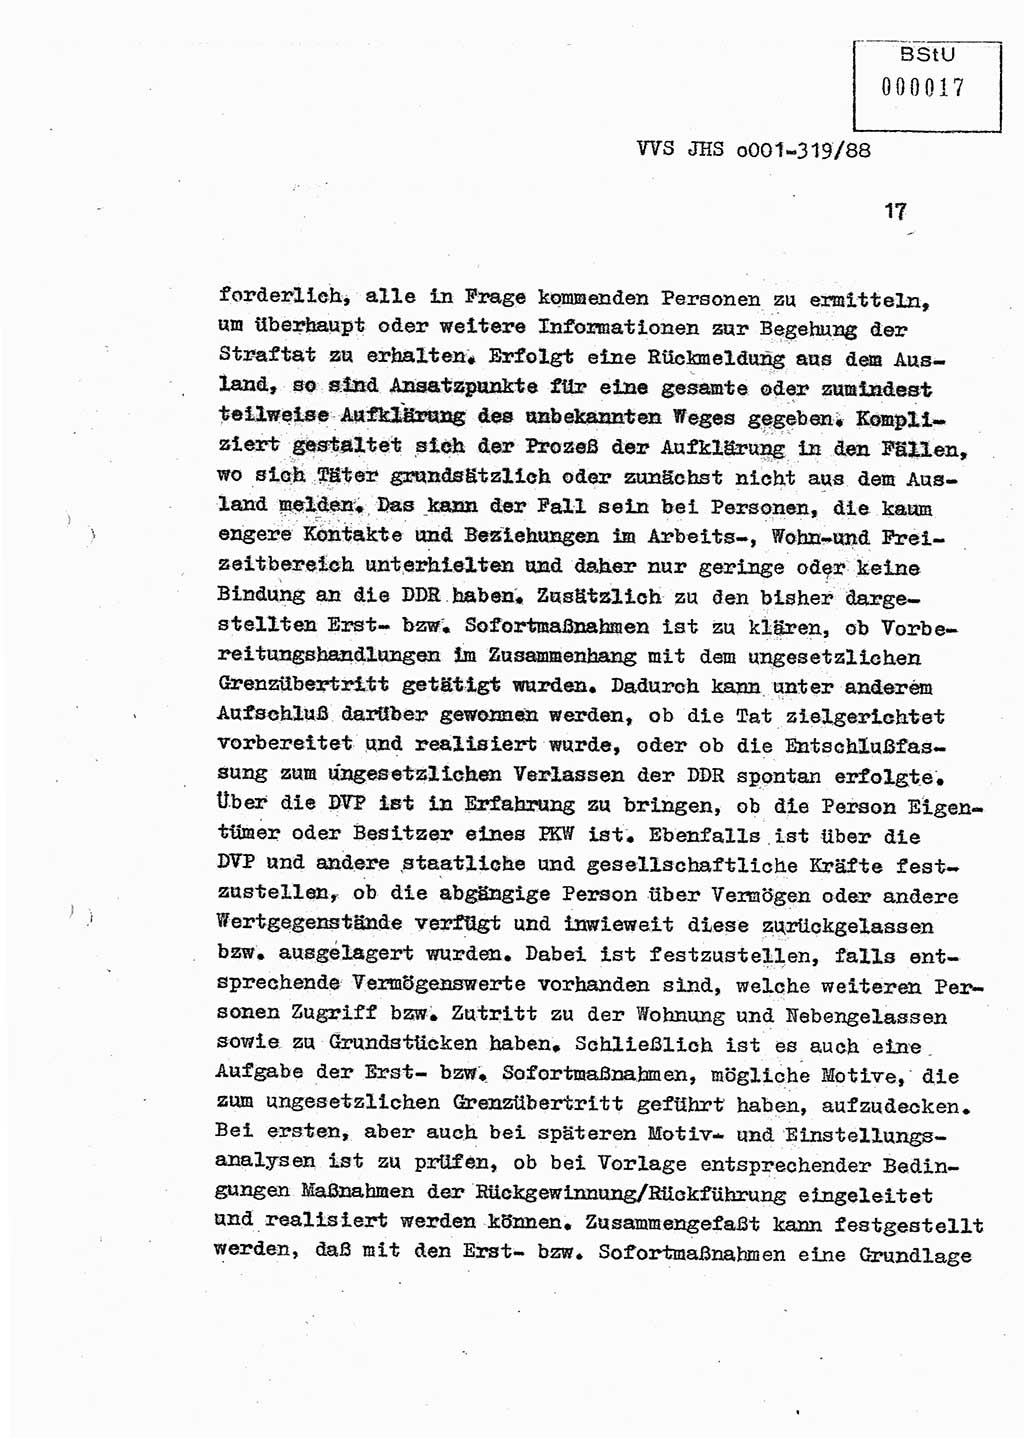 Diplomarbeit Offiziersschüler Holger Zirnstein (HA Ⅸ/9), Ministerium für Staatssicherheit (MfS) [Deutsche Demokratische Republik (DDR)], Juristische Hochschule (JHS), Vertrauliche Verschlußsache (VVS) o001-319/88, Potsdam 1988, Blatt 17 (Dipl.-Arb. MfS DDR JHS VVS o001-319/88 1988, Bl. 17)